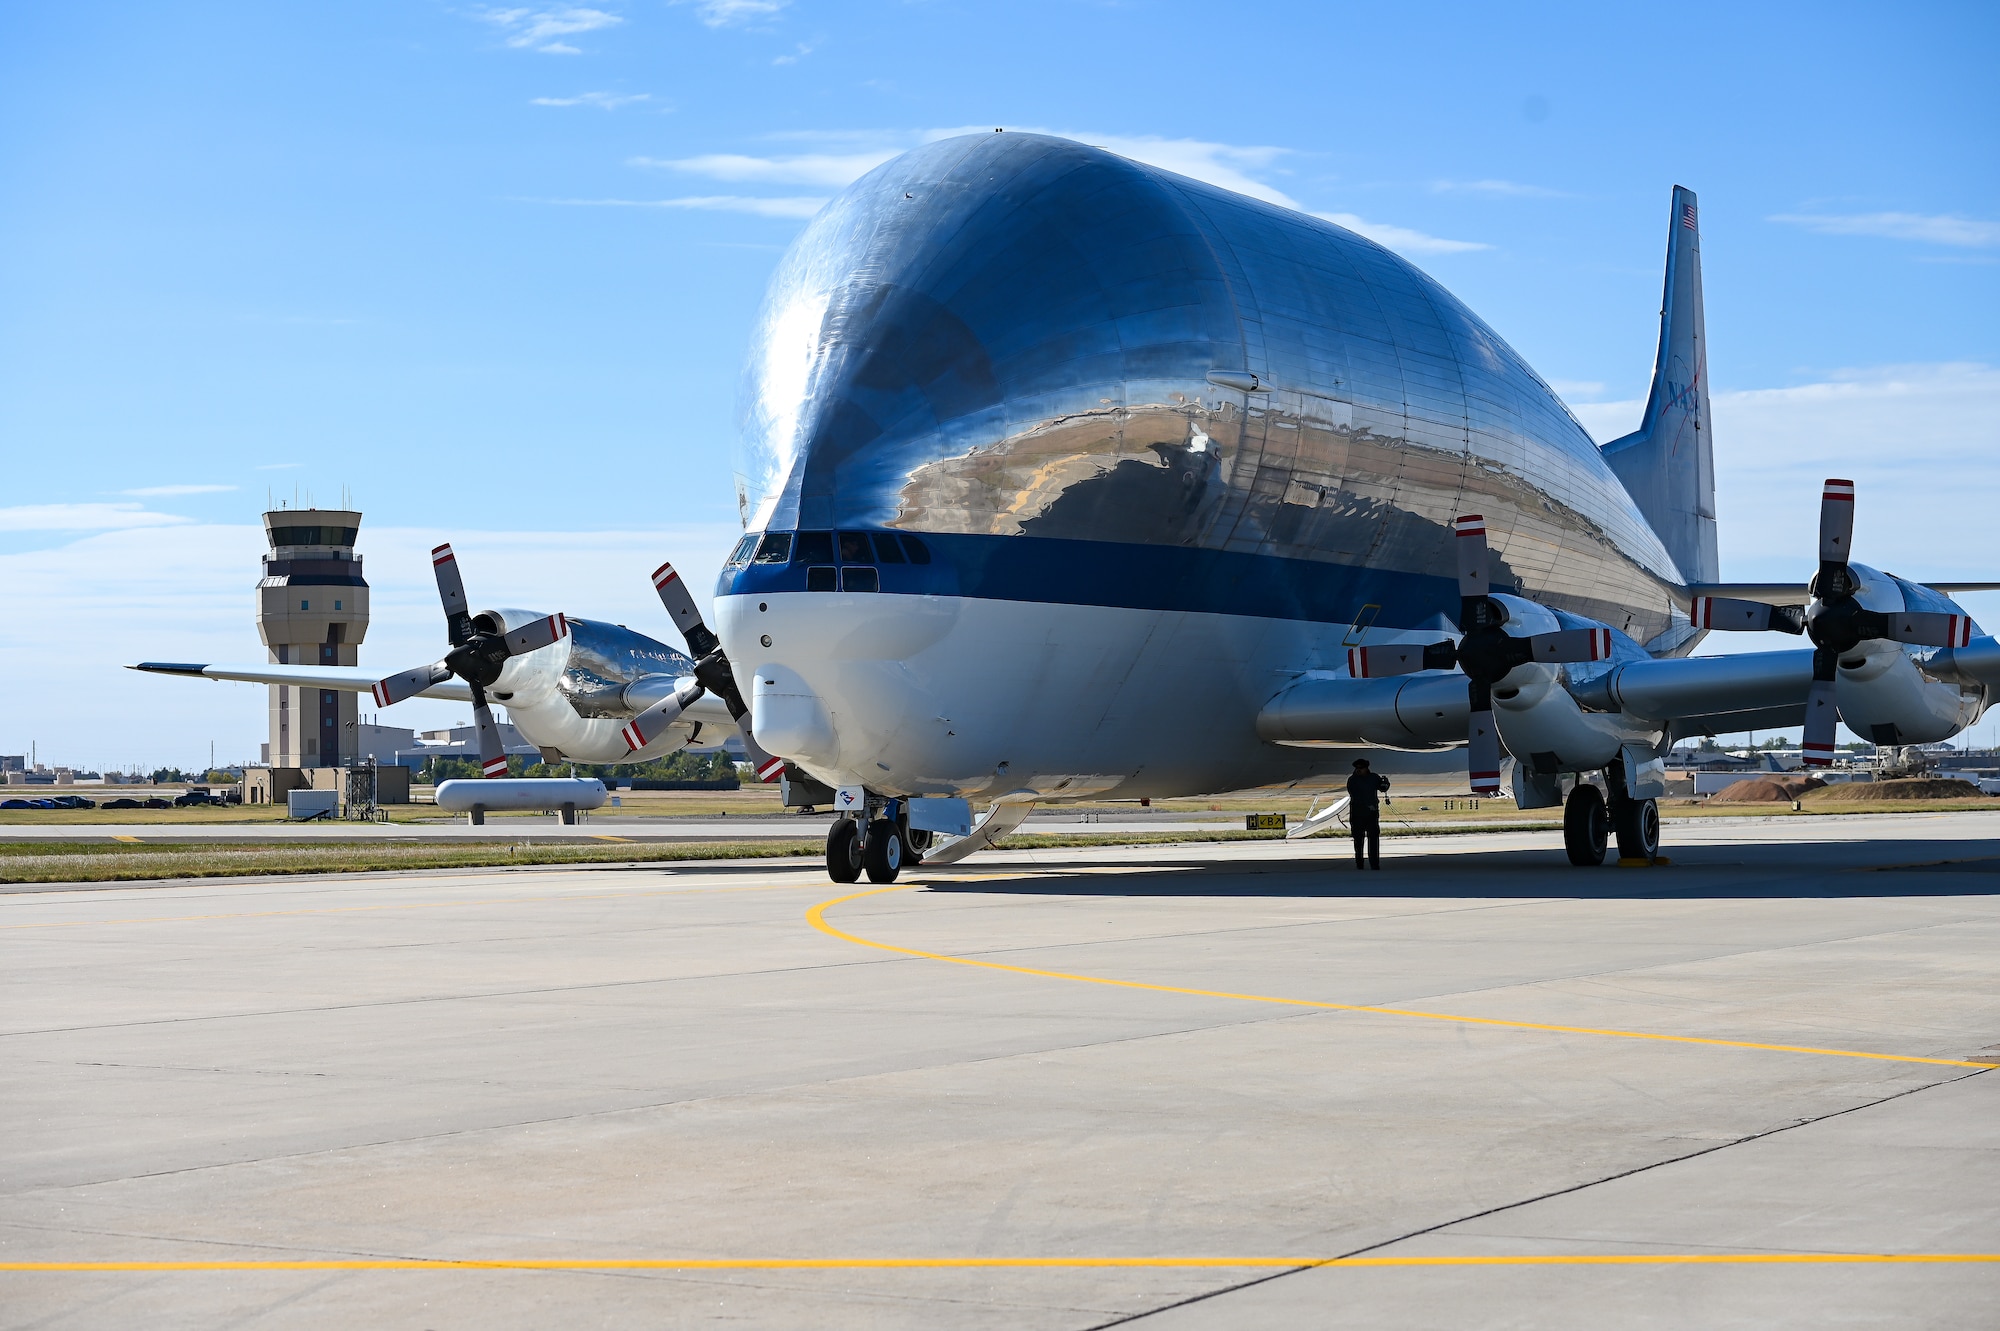 NASA Super Guppy aircraft taxiing